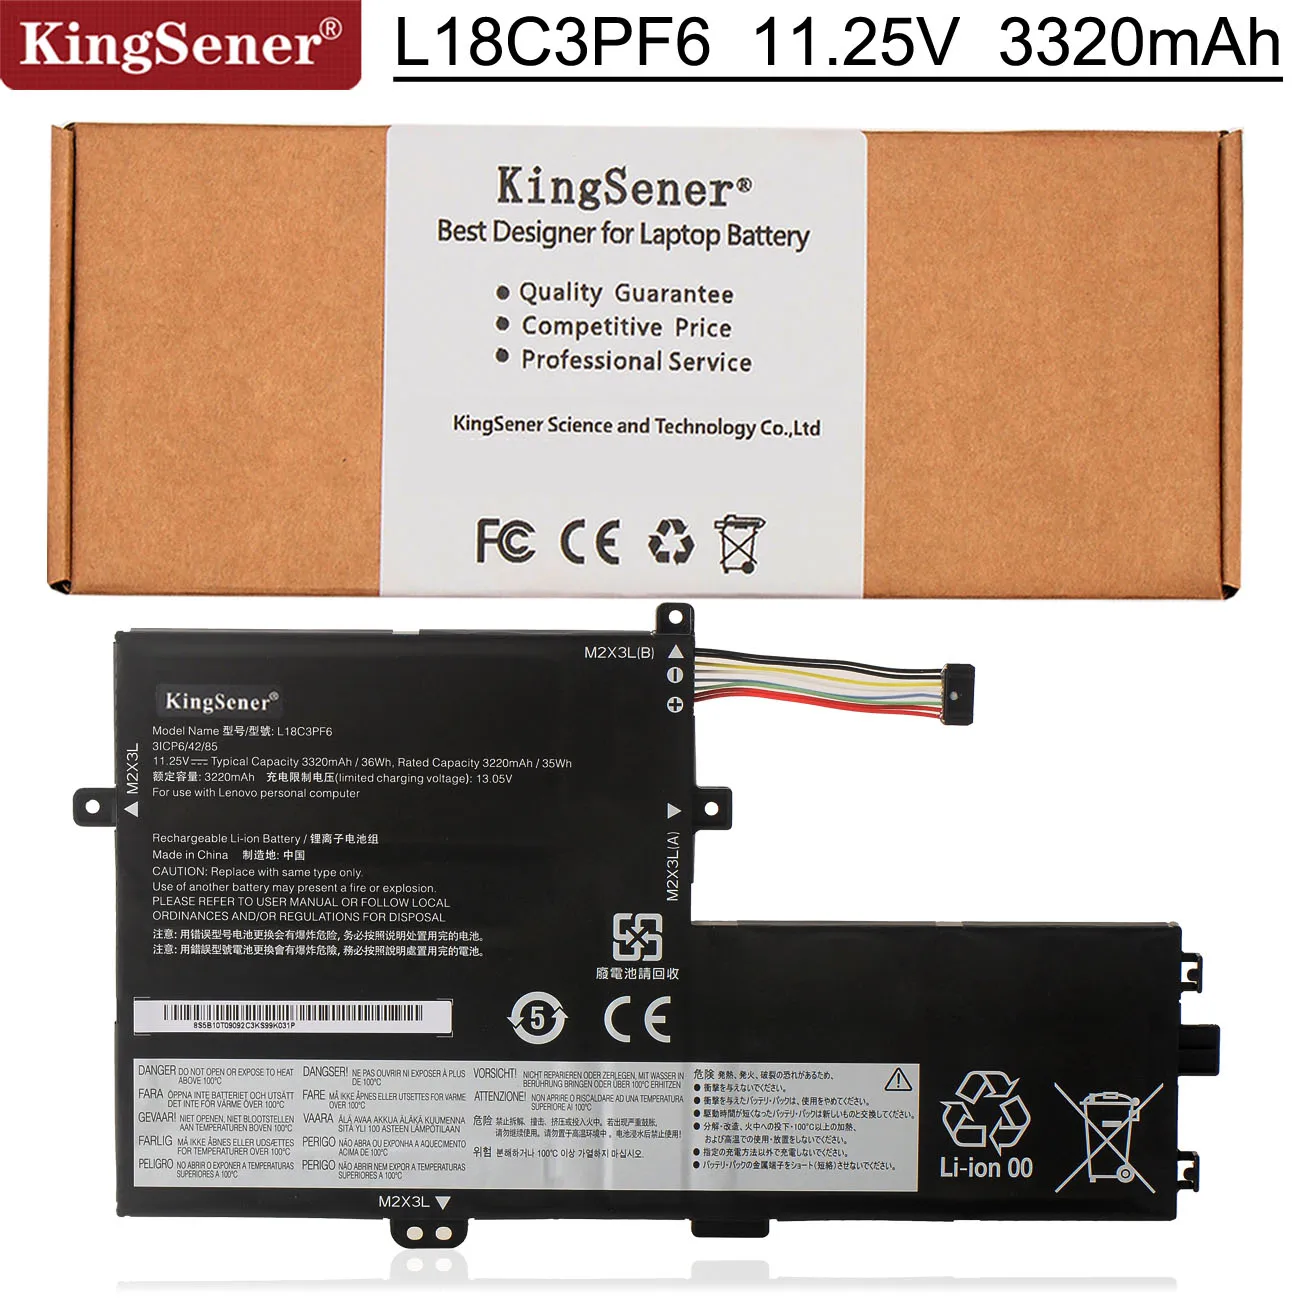 

KingSener L18C3PF6 L18L3PF3 L18C3PF7 Laptop Battery For Lenovo Ideapad S340-14 S340-15IWL Xiao Xin 14-2019 15-2019 L18M3PF6 35WH